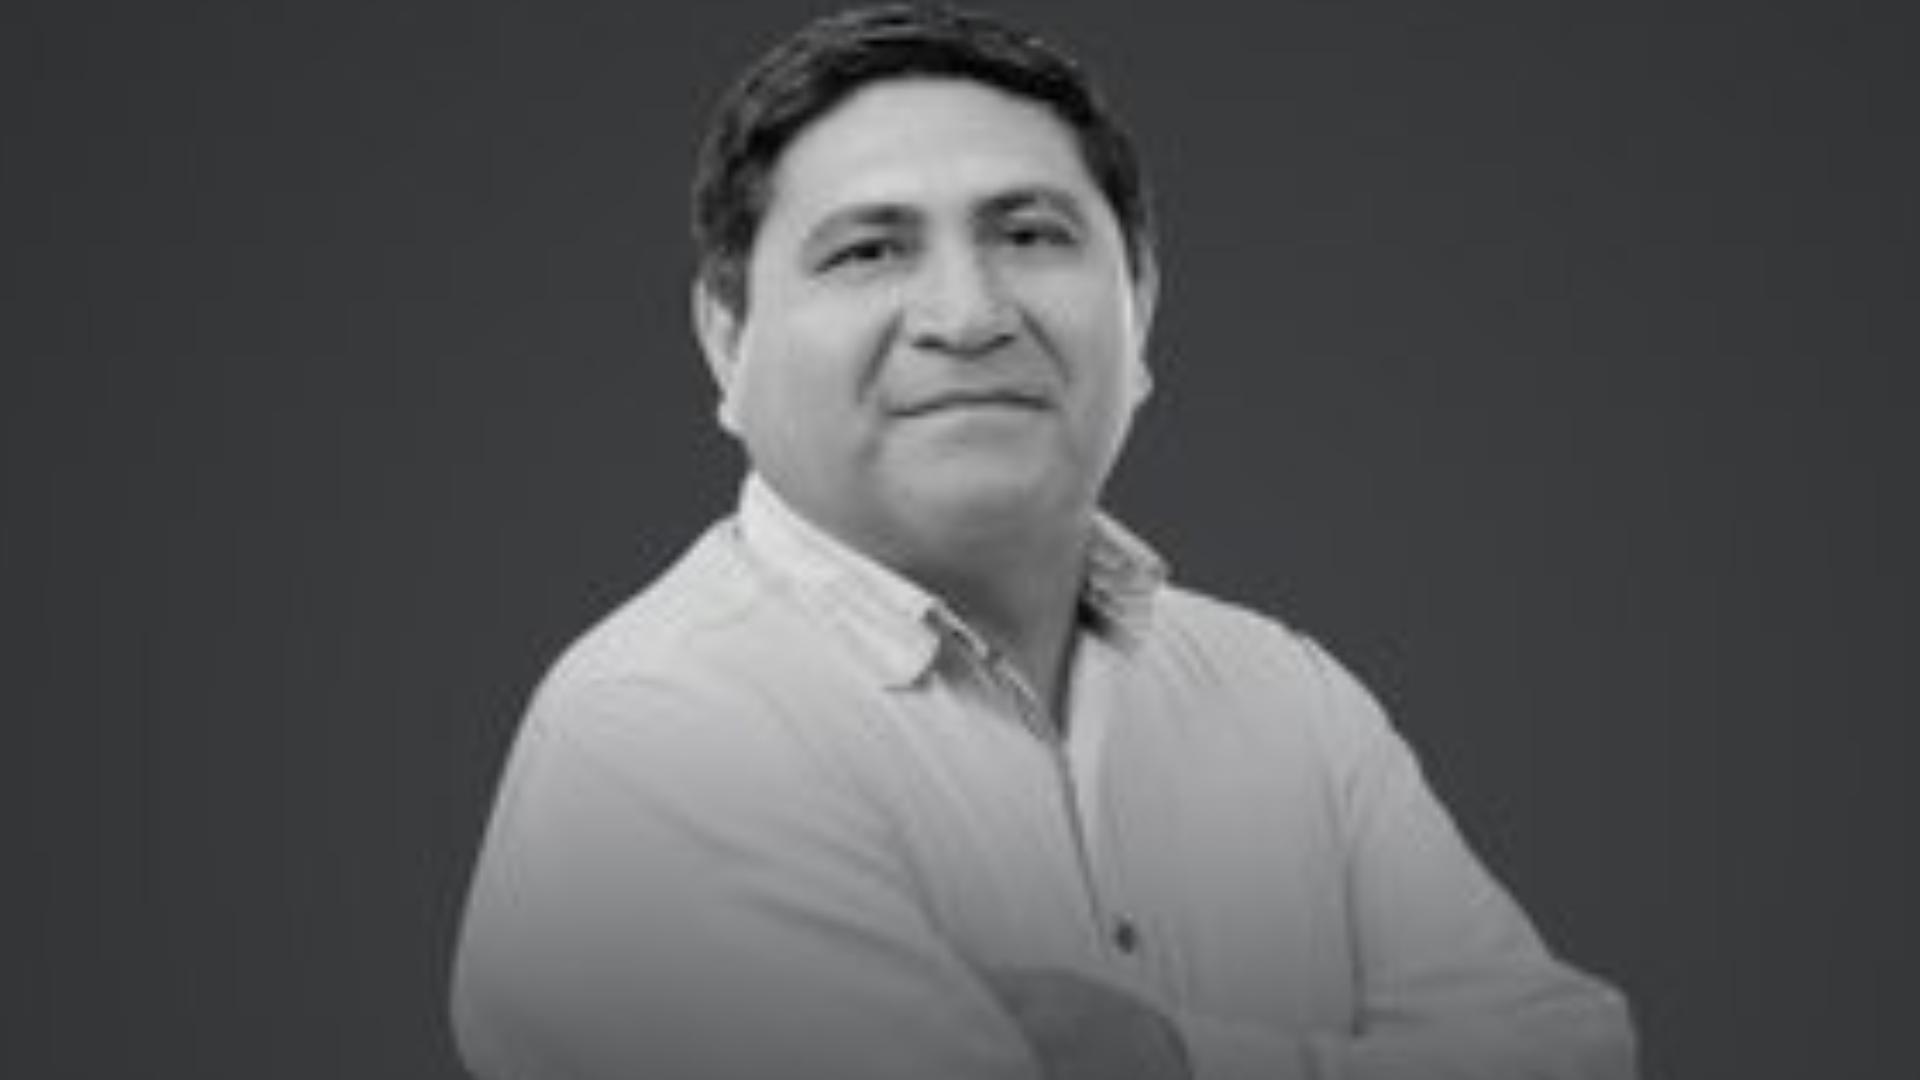 Muere Candidato del PAN, Mientras Cortaba un Árbol en su Casa en Yucatán 